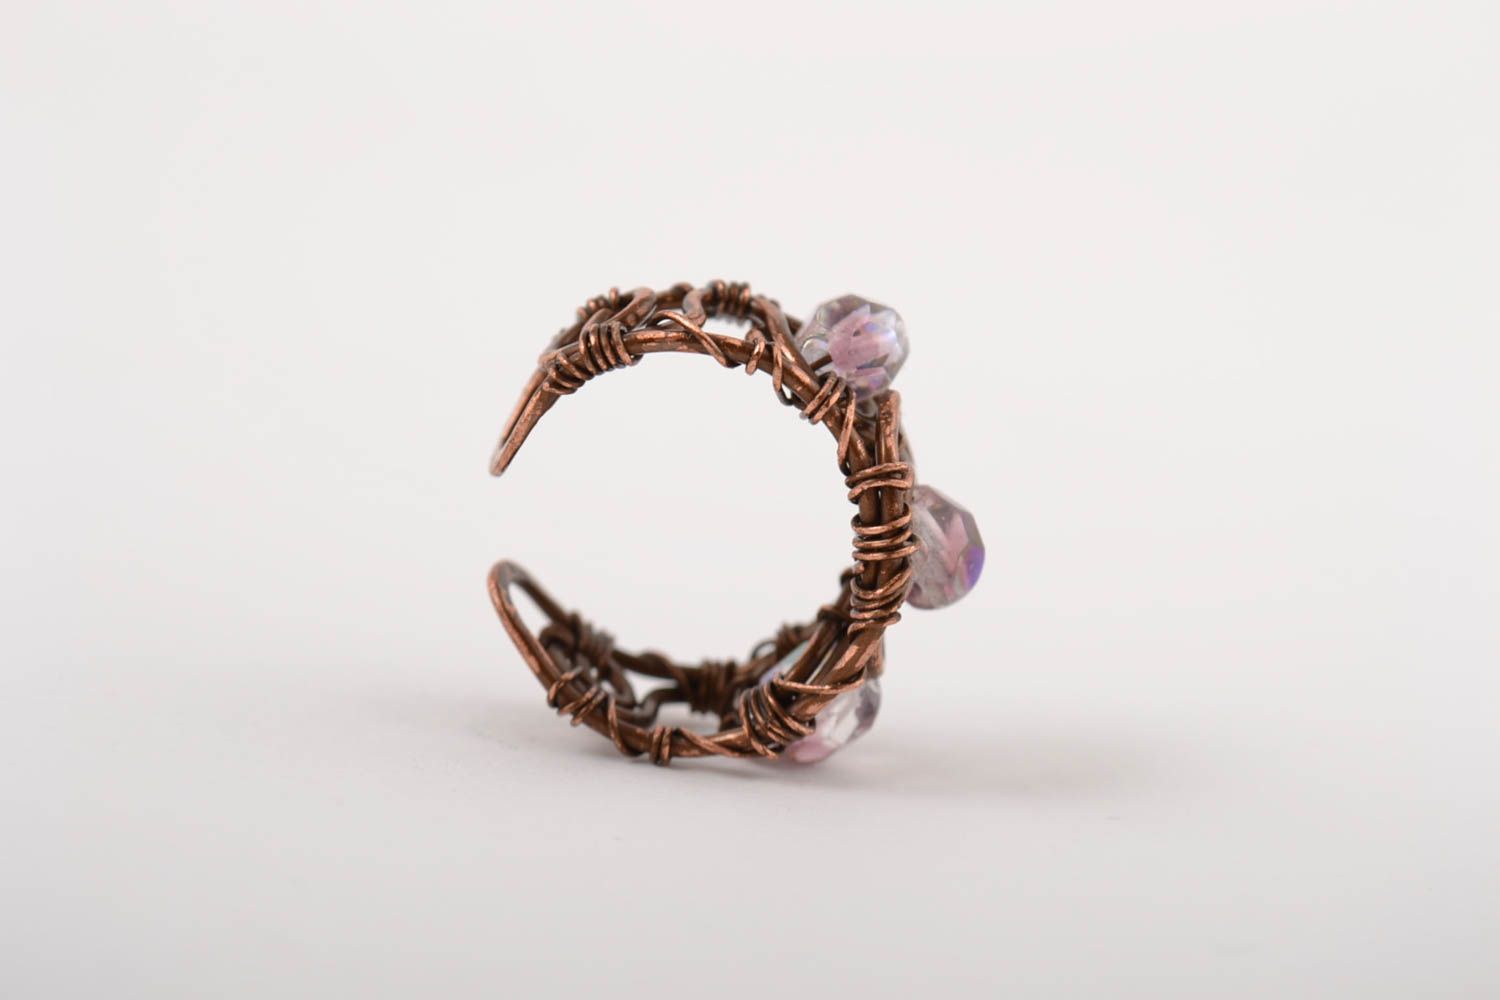 Красивое кольцо хэнд мэйд украшение в технике wire wrap медное кольцо со стеклом фото 3